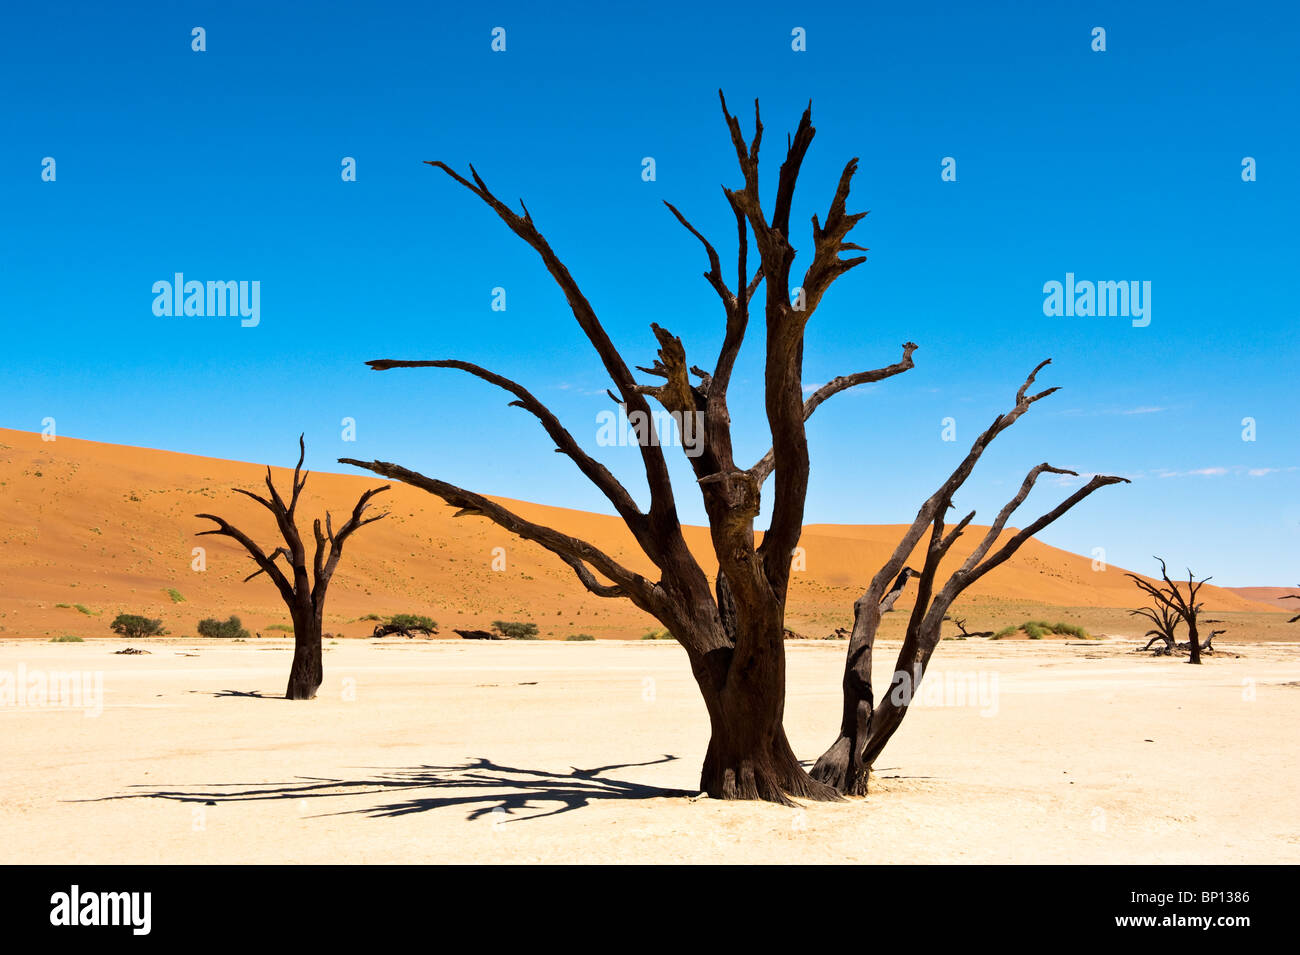 Dead Vlei à Sossusvlei paysage avec dead acacia arbres et dunes de sable rouge Namibie Namib Naukluft Park Banque D'Images